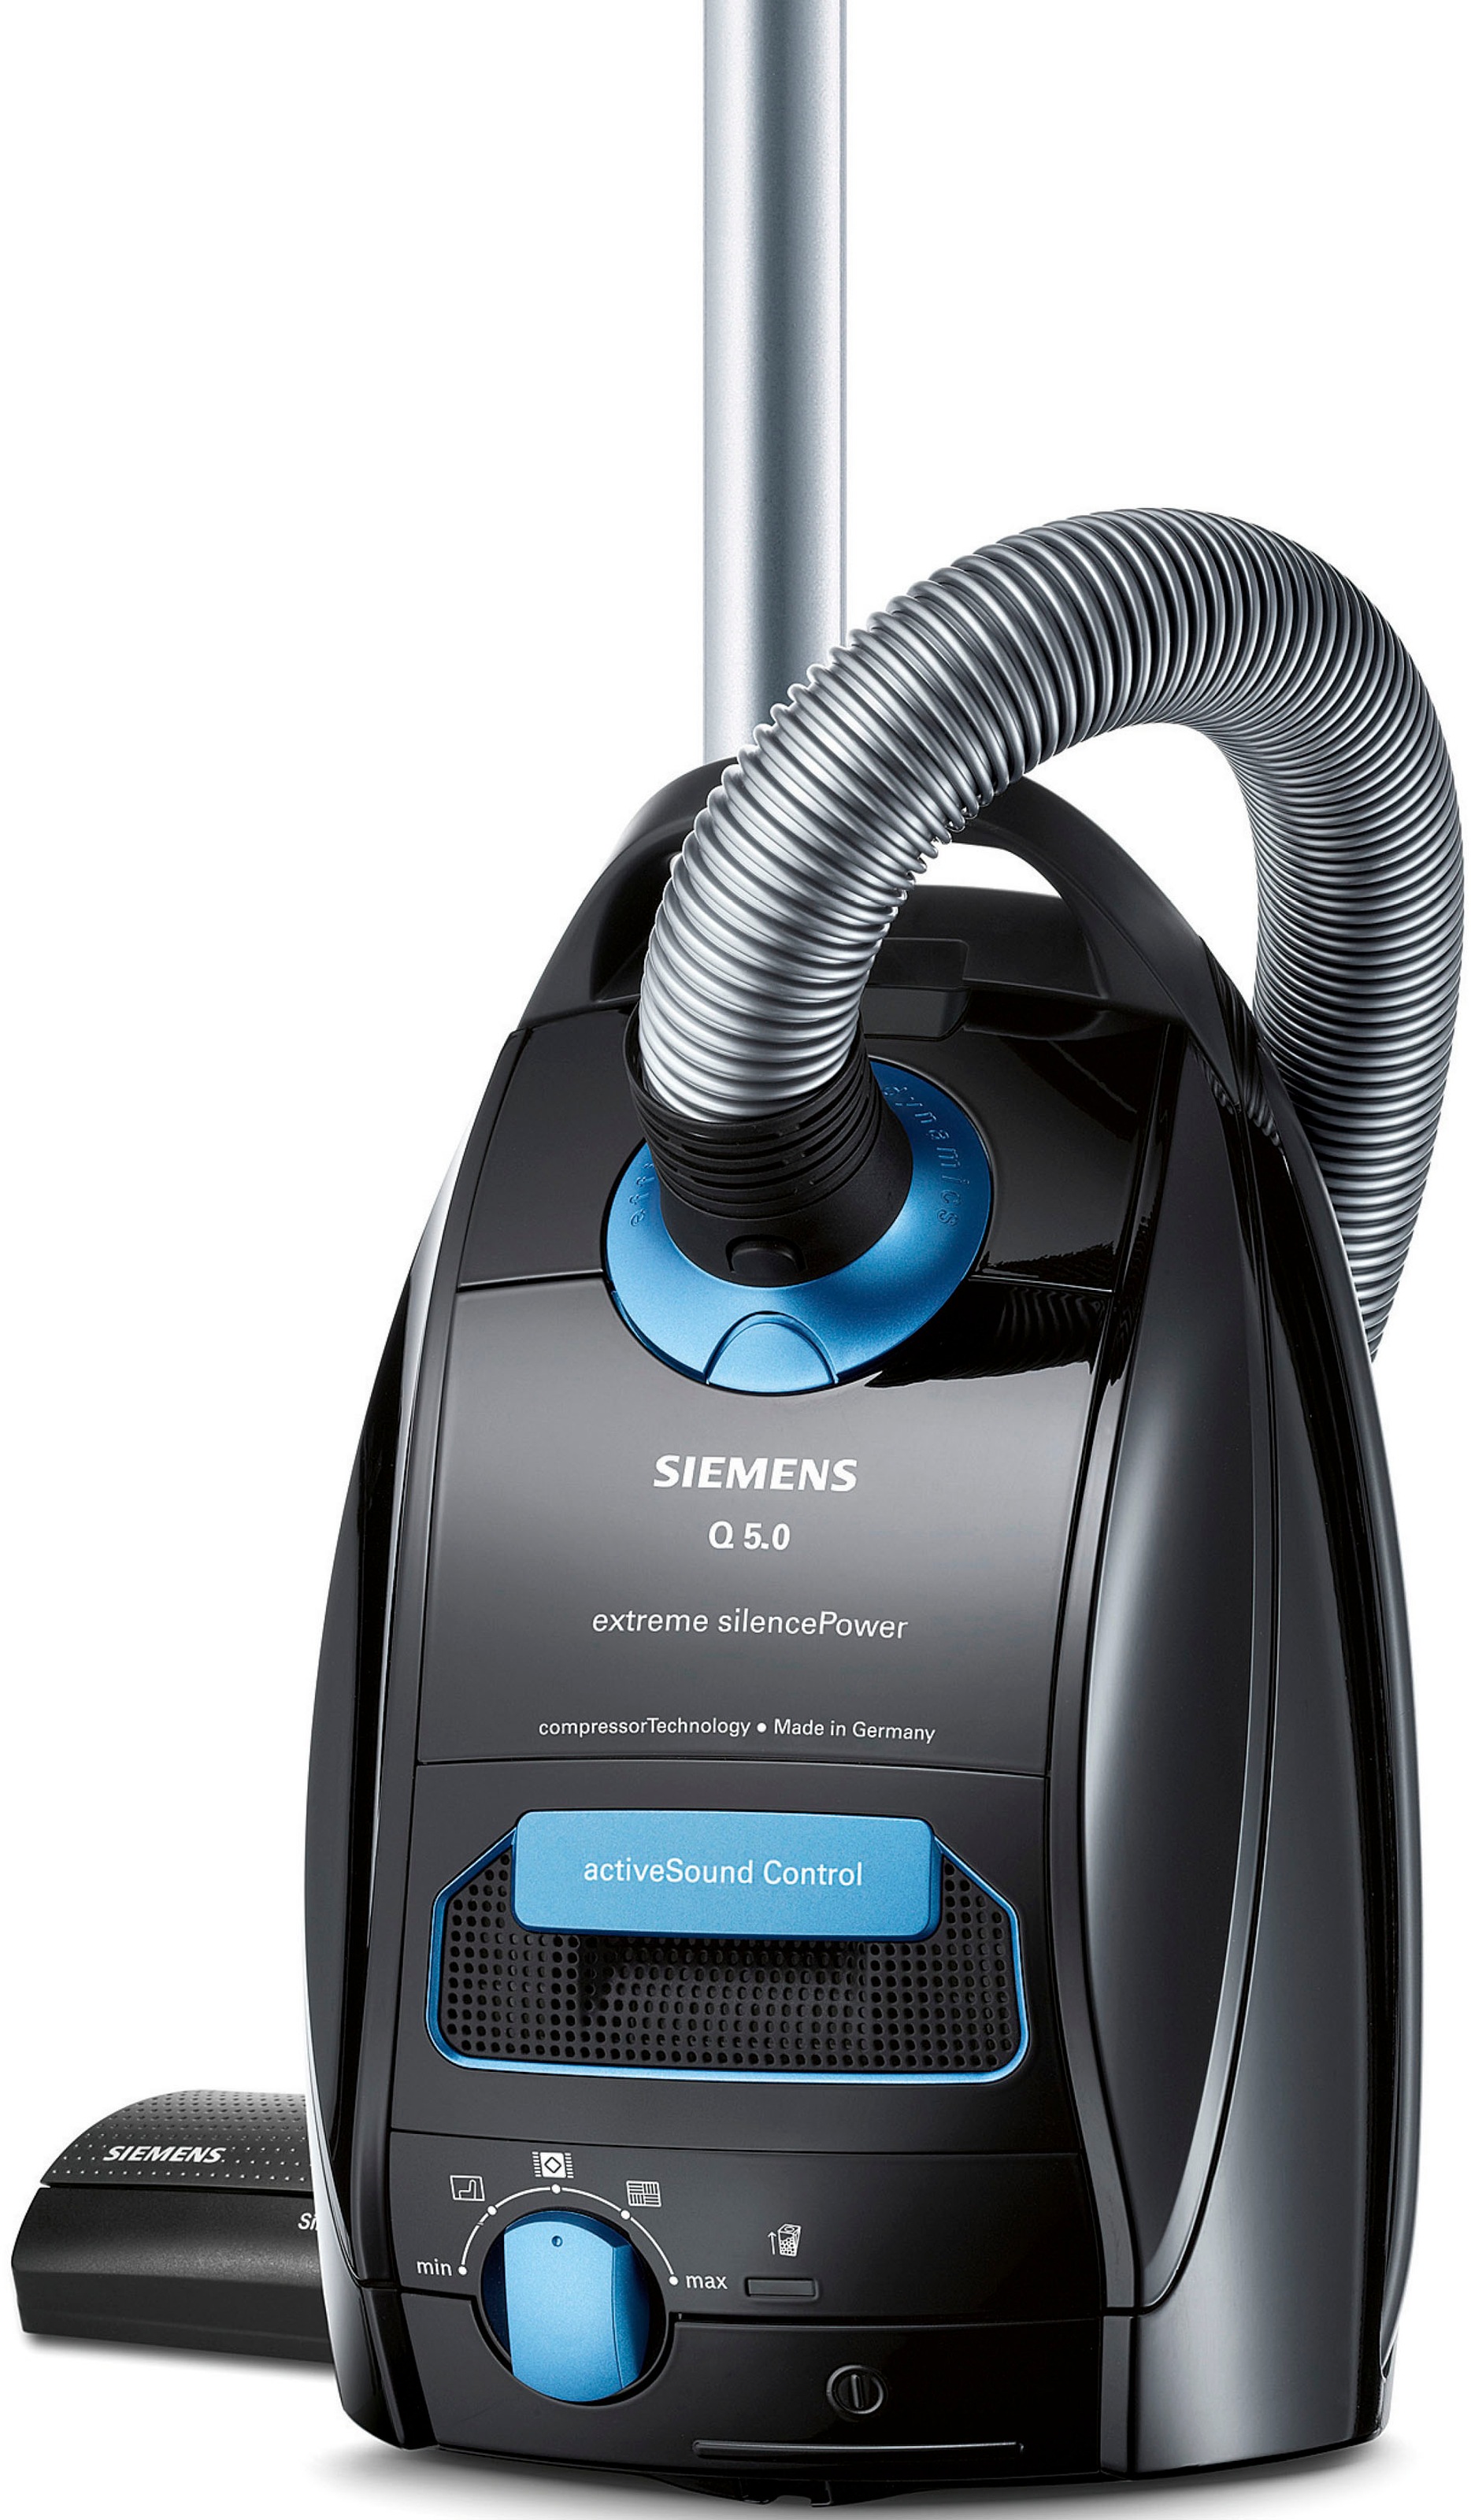 SIEMENS Bodenstaubsauger »extreme silencePower VSQ5X1230, schwarz«, 850 W, mit Beutel, starke Saugleistung, ideal für Allergiker